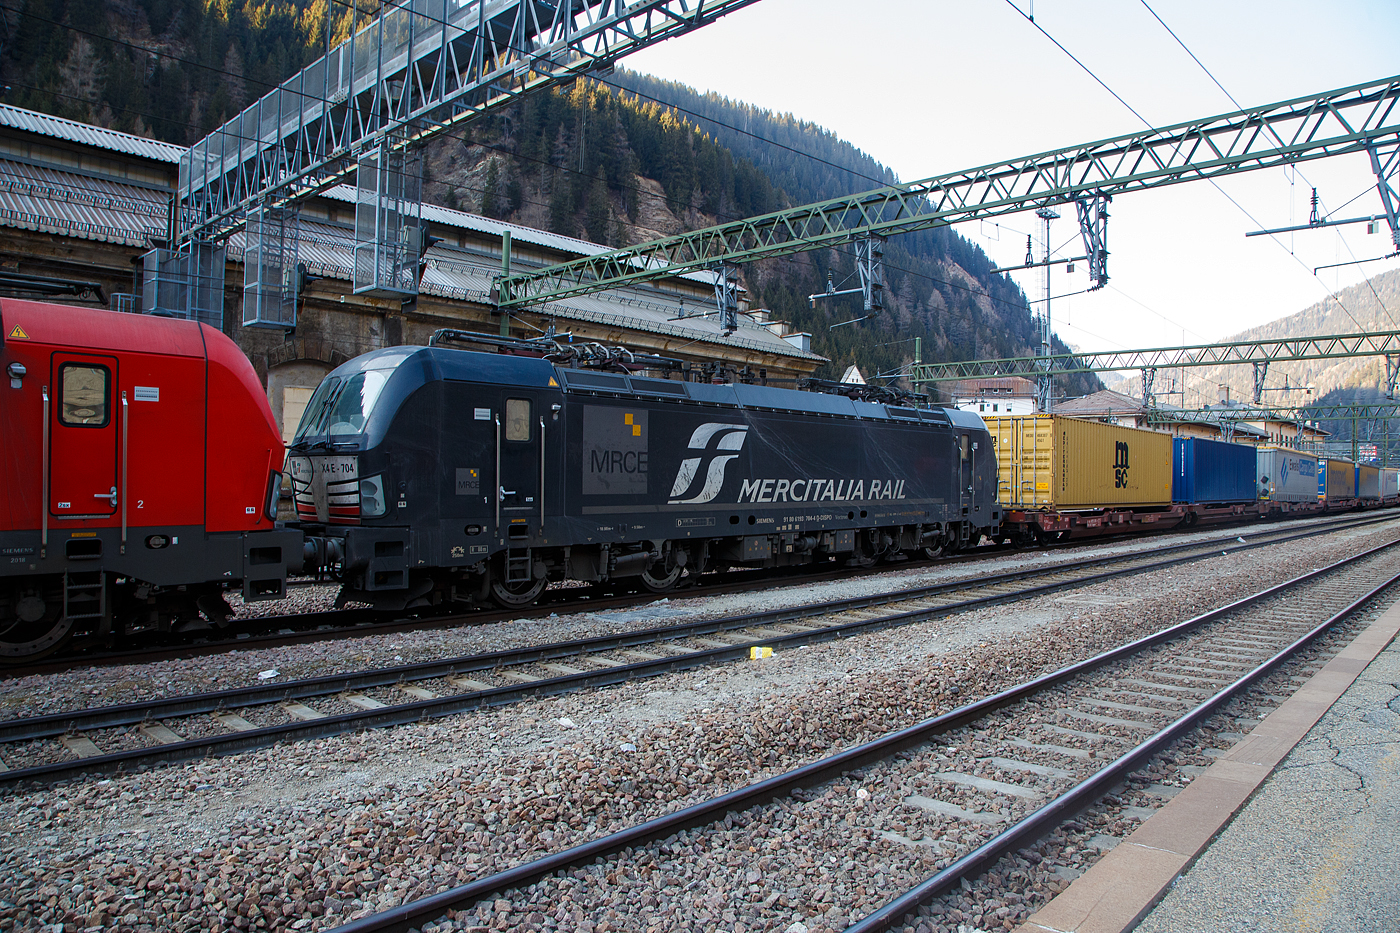 Die an die Mercitalia Rail S.r.l. vermietete X4 E – 704 / 193 704 (91 80 6193 704-4 D-DISPO) der MRCE Dispolok GmbH (München), hinter der DB Cargo 193 31, am 27.03.2022 mit einem KLV-Zug aus Österreich kommend im Bahnhof Brenner (Stazione di Brennero). Die Stromabnehmer sind wegen dem Systemwechsel Österreich/Italien noch gesenkt. 

Die Siemens Vectron MS wurde 2018 von Siemens in München-Allach unter der Fabriknummer 22388 gebaut. Diese Vectron Lokomotive ist als MS – Lokomotive (Multisystem-Variante) mit 6.400 kW (160 km/h) konzipiert und zugelassen für Deutschland, Österreich, Schweiz, Italien und Niederlande (D/A/CH/I/NL).